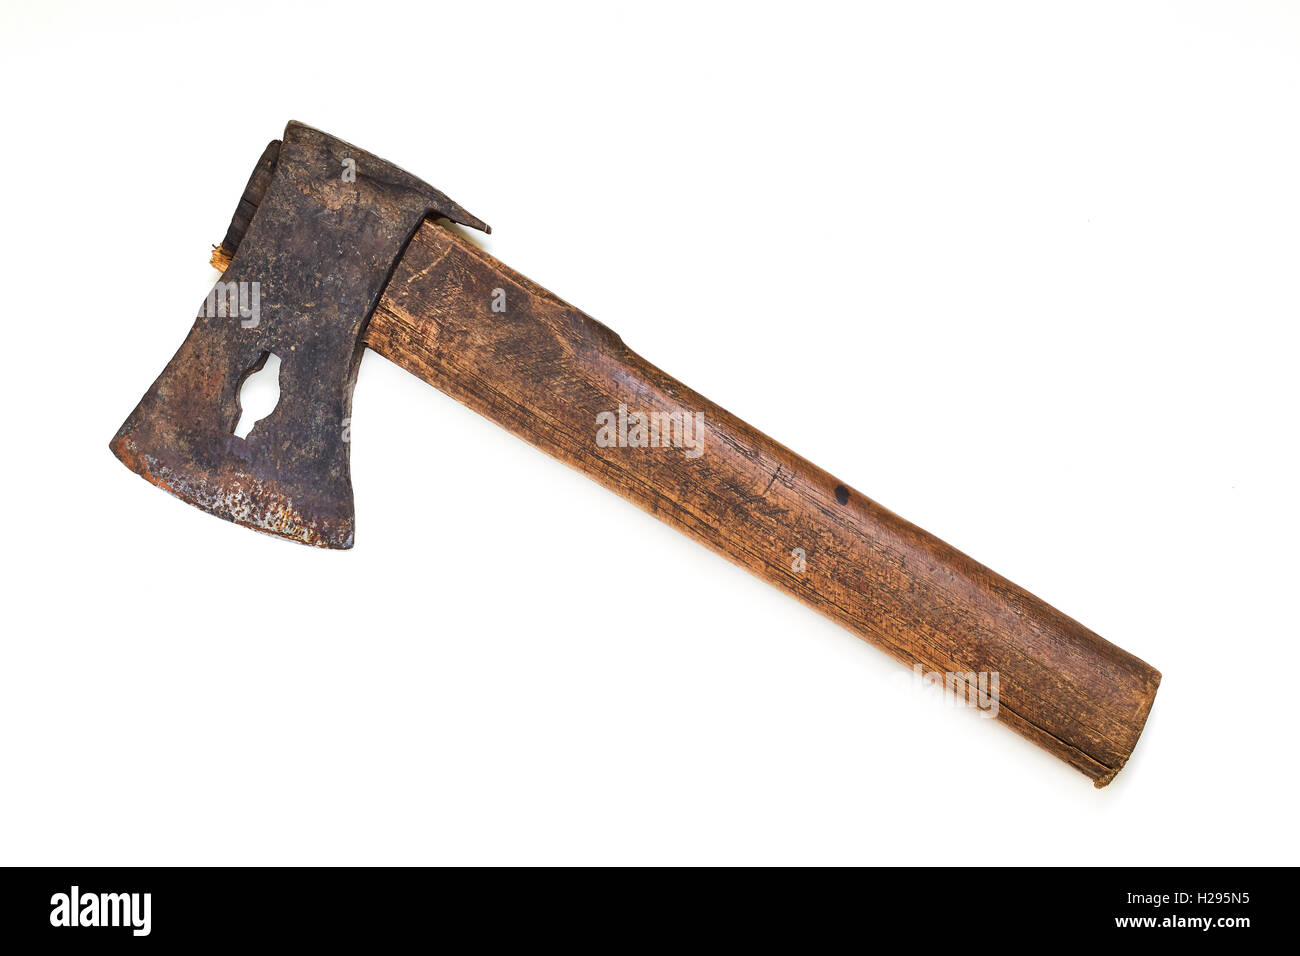 Alte rustikale Axt mit Holzgriff isoliert auf weißem Hintergrund  Stockfotografie - Alamy